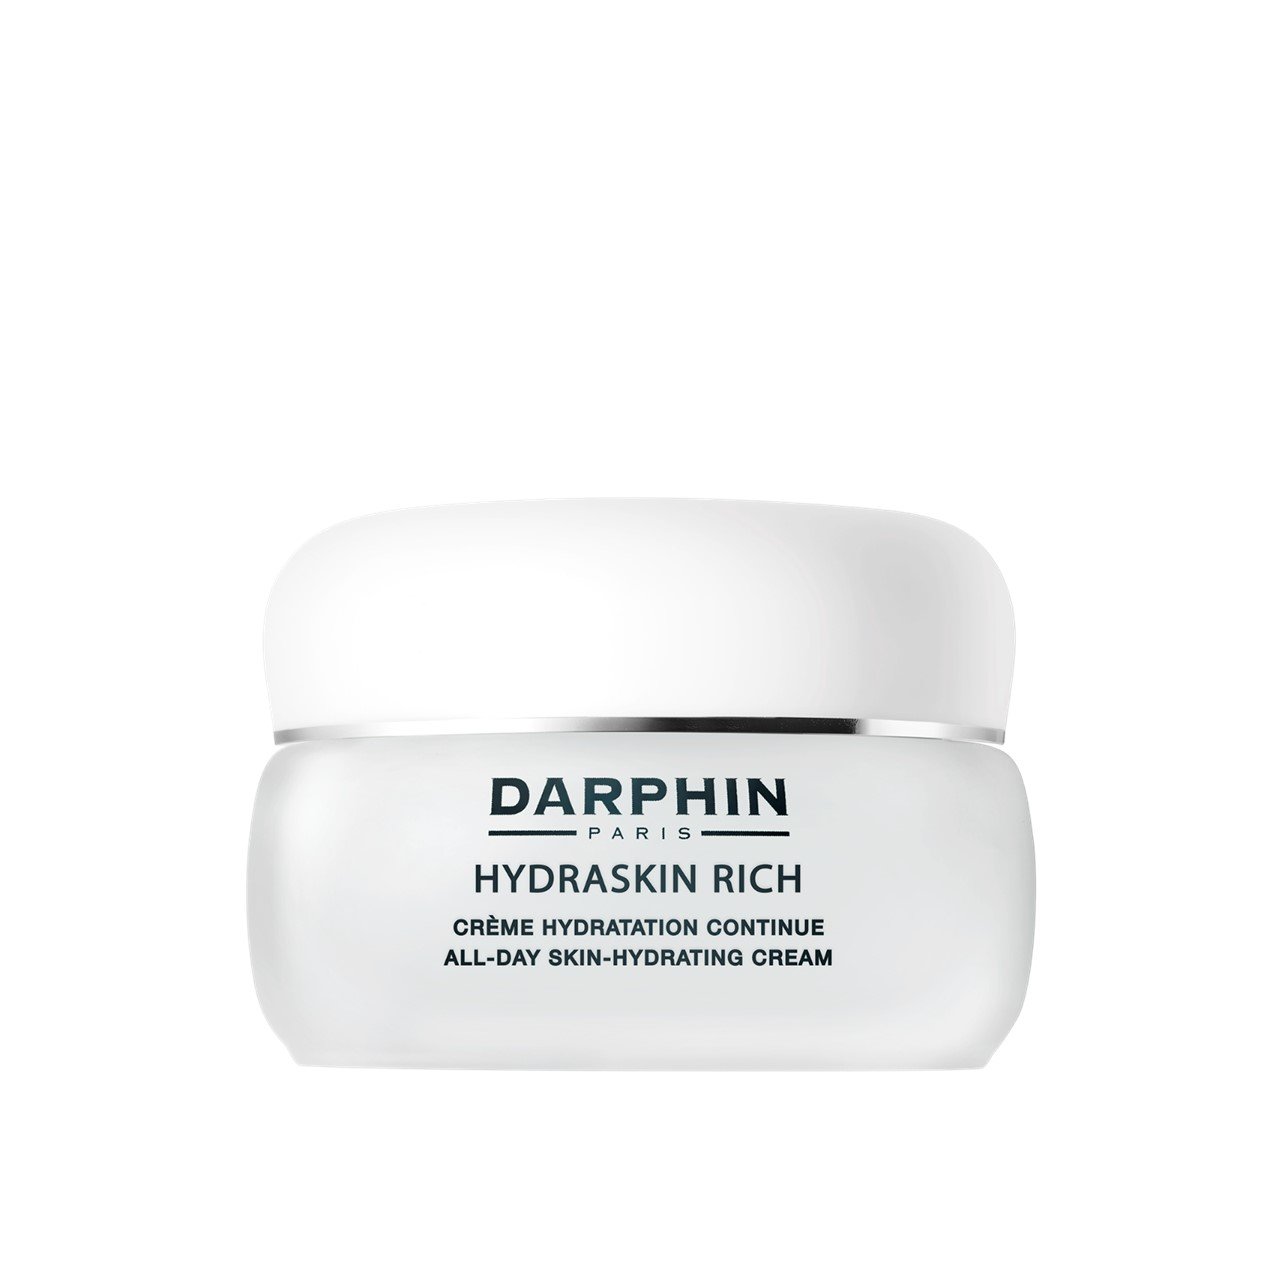 Darphin Hydraskin Rich All-Day Skin-Hydrating Cream 50ml (1.69fl oz)